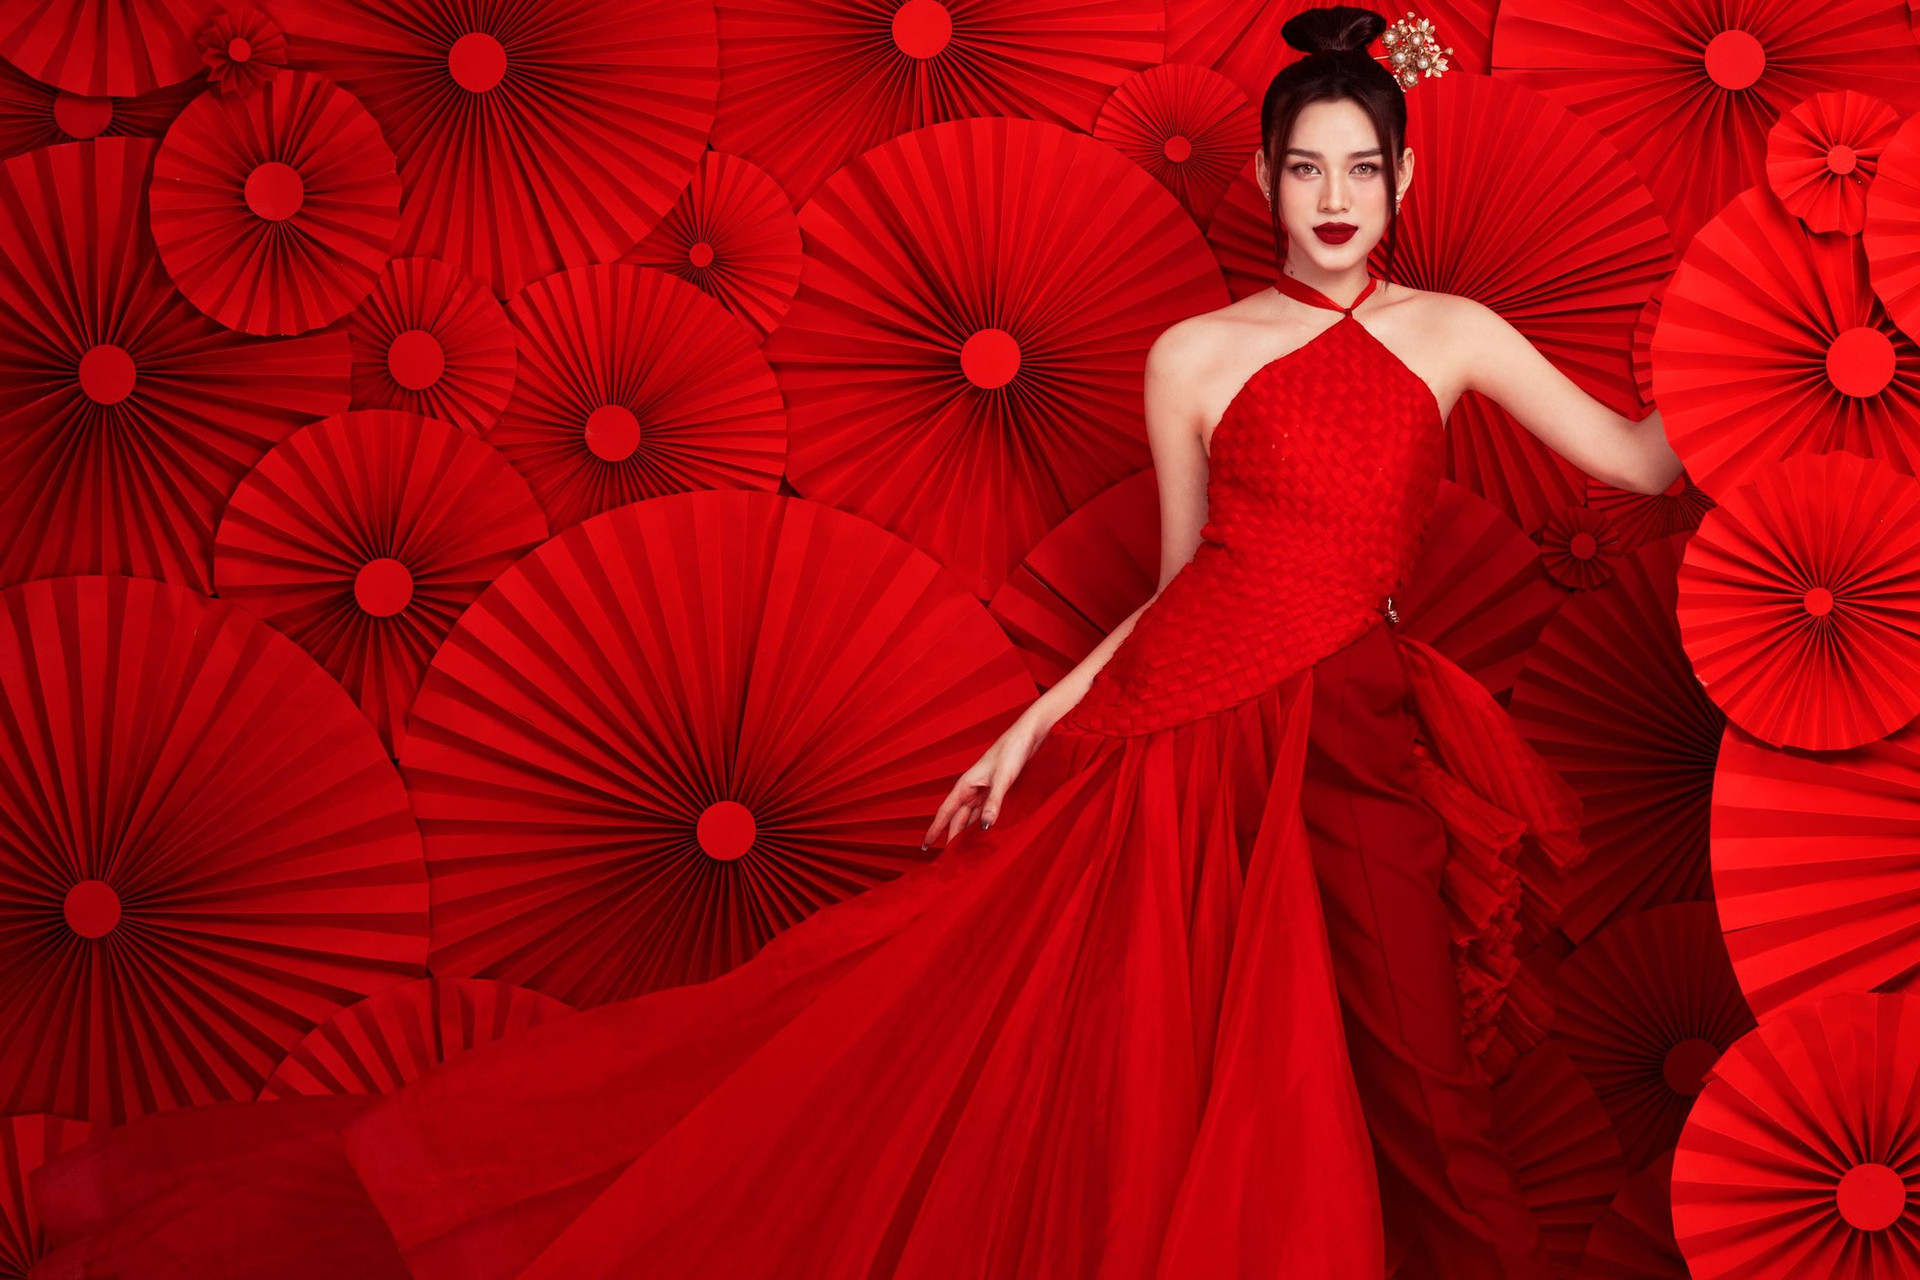 Hoa hậu Đỗ Thị Hà diện yếm đỏ, khoe lưng trần gợi cảm trong bộ ảnh Tết ảnh 4